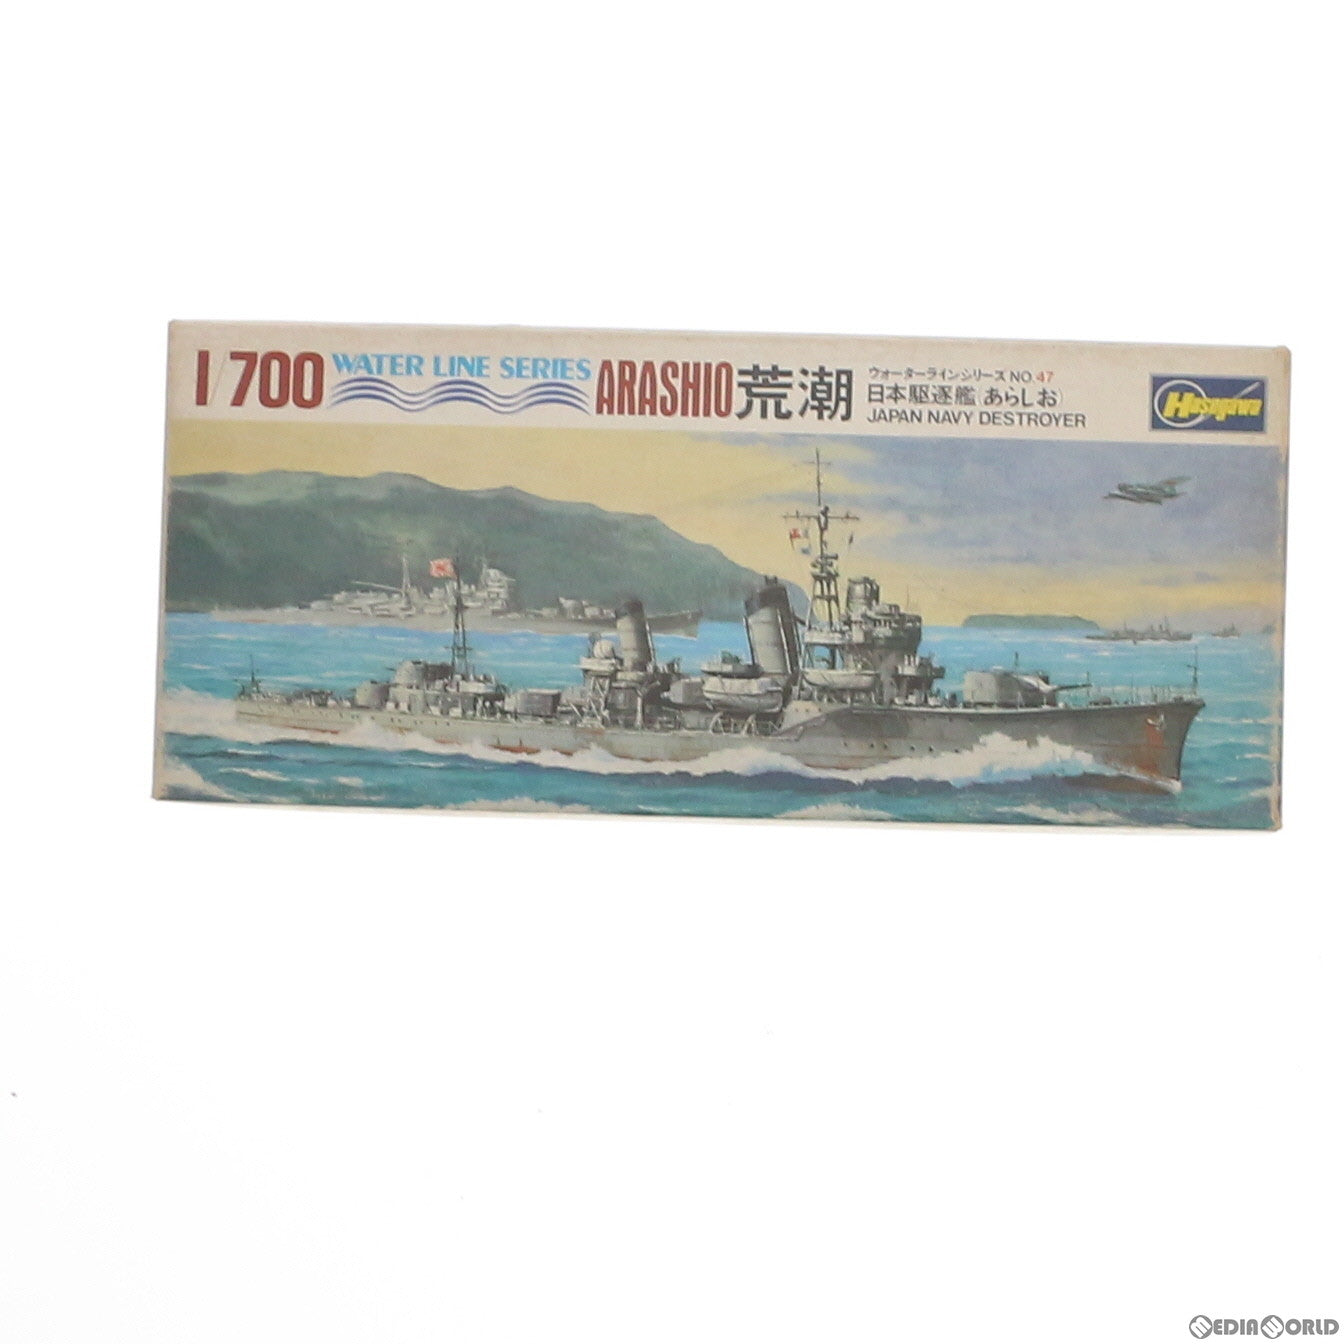 【中古即納】[PTM]1/700 日本駆逐艦 荒潮(あらしお) ウォーターラインシリーズ No.47 プラモデル(WL.D047) ハセガワ(19991231)